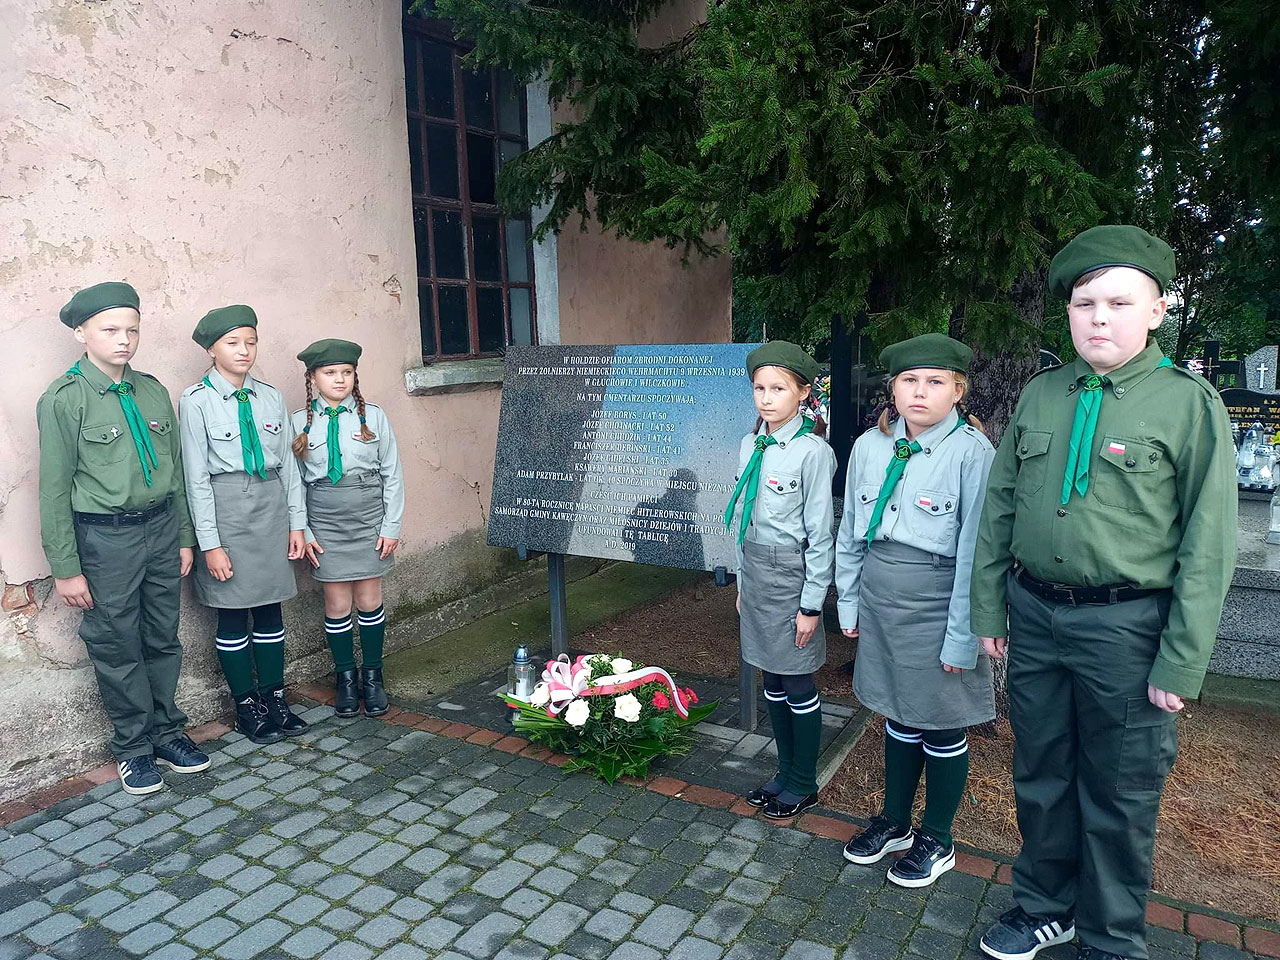 Pamięci ofiar hitlerowskiej zbrodni w Głuchowie. 83. rocznica mordu na mieszkańcach - fot.: UG Kawęczyn